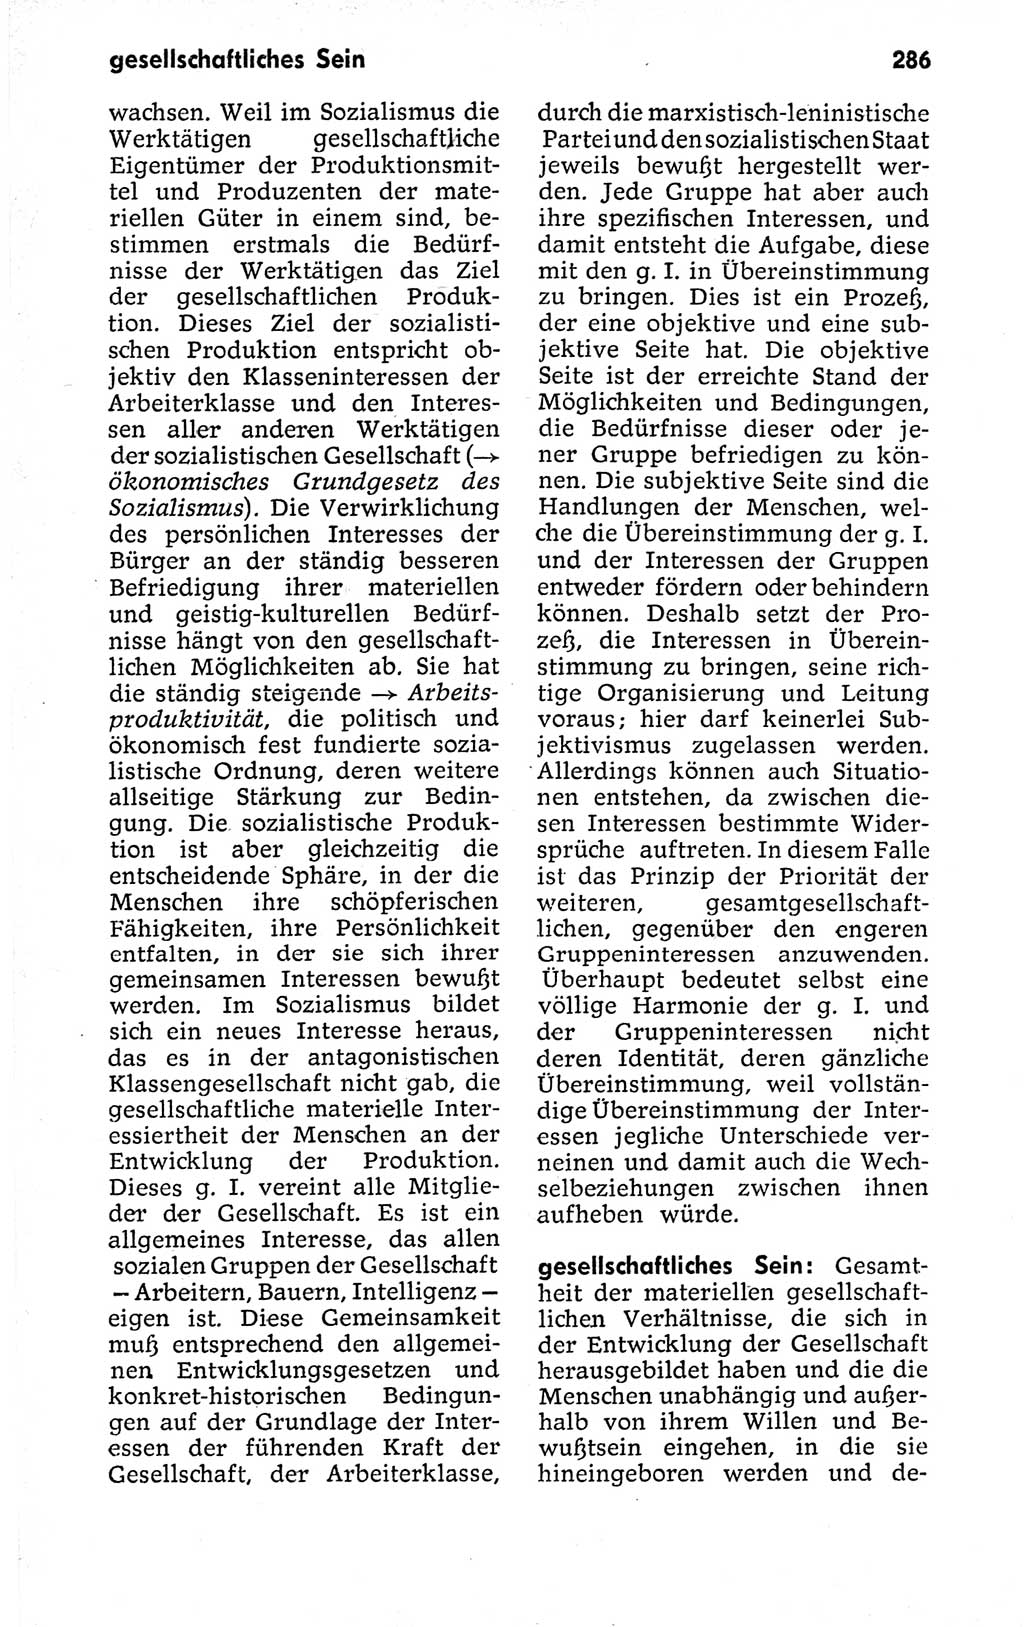 Kleines politisches Wörterbuch [Deutsche Demokratische Republik (DDR)] 1973, Seite 286 (Kl. pol. Wb. DDR 1973, S. 286)